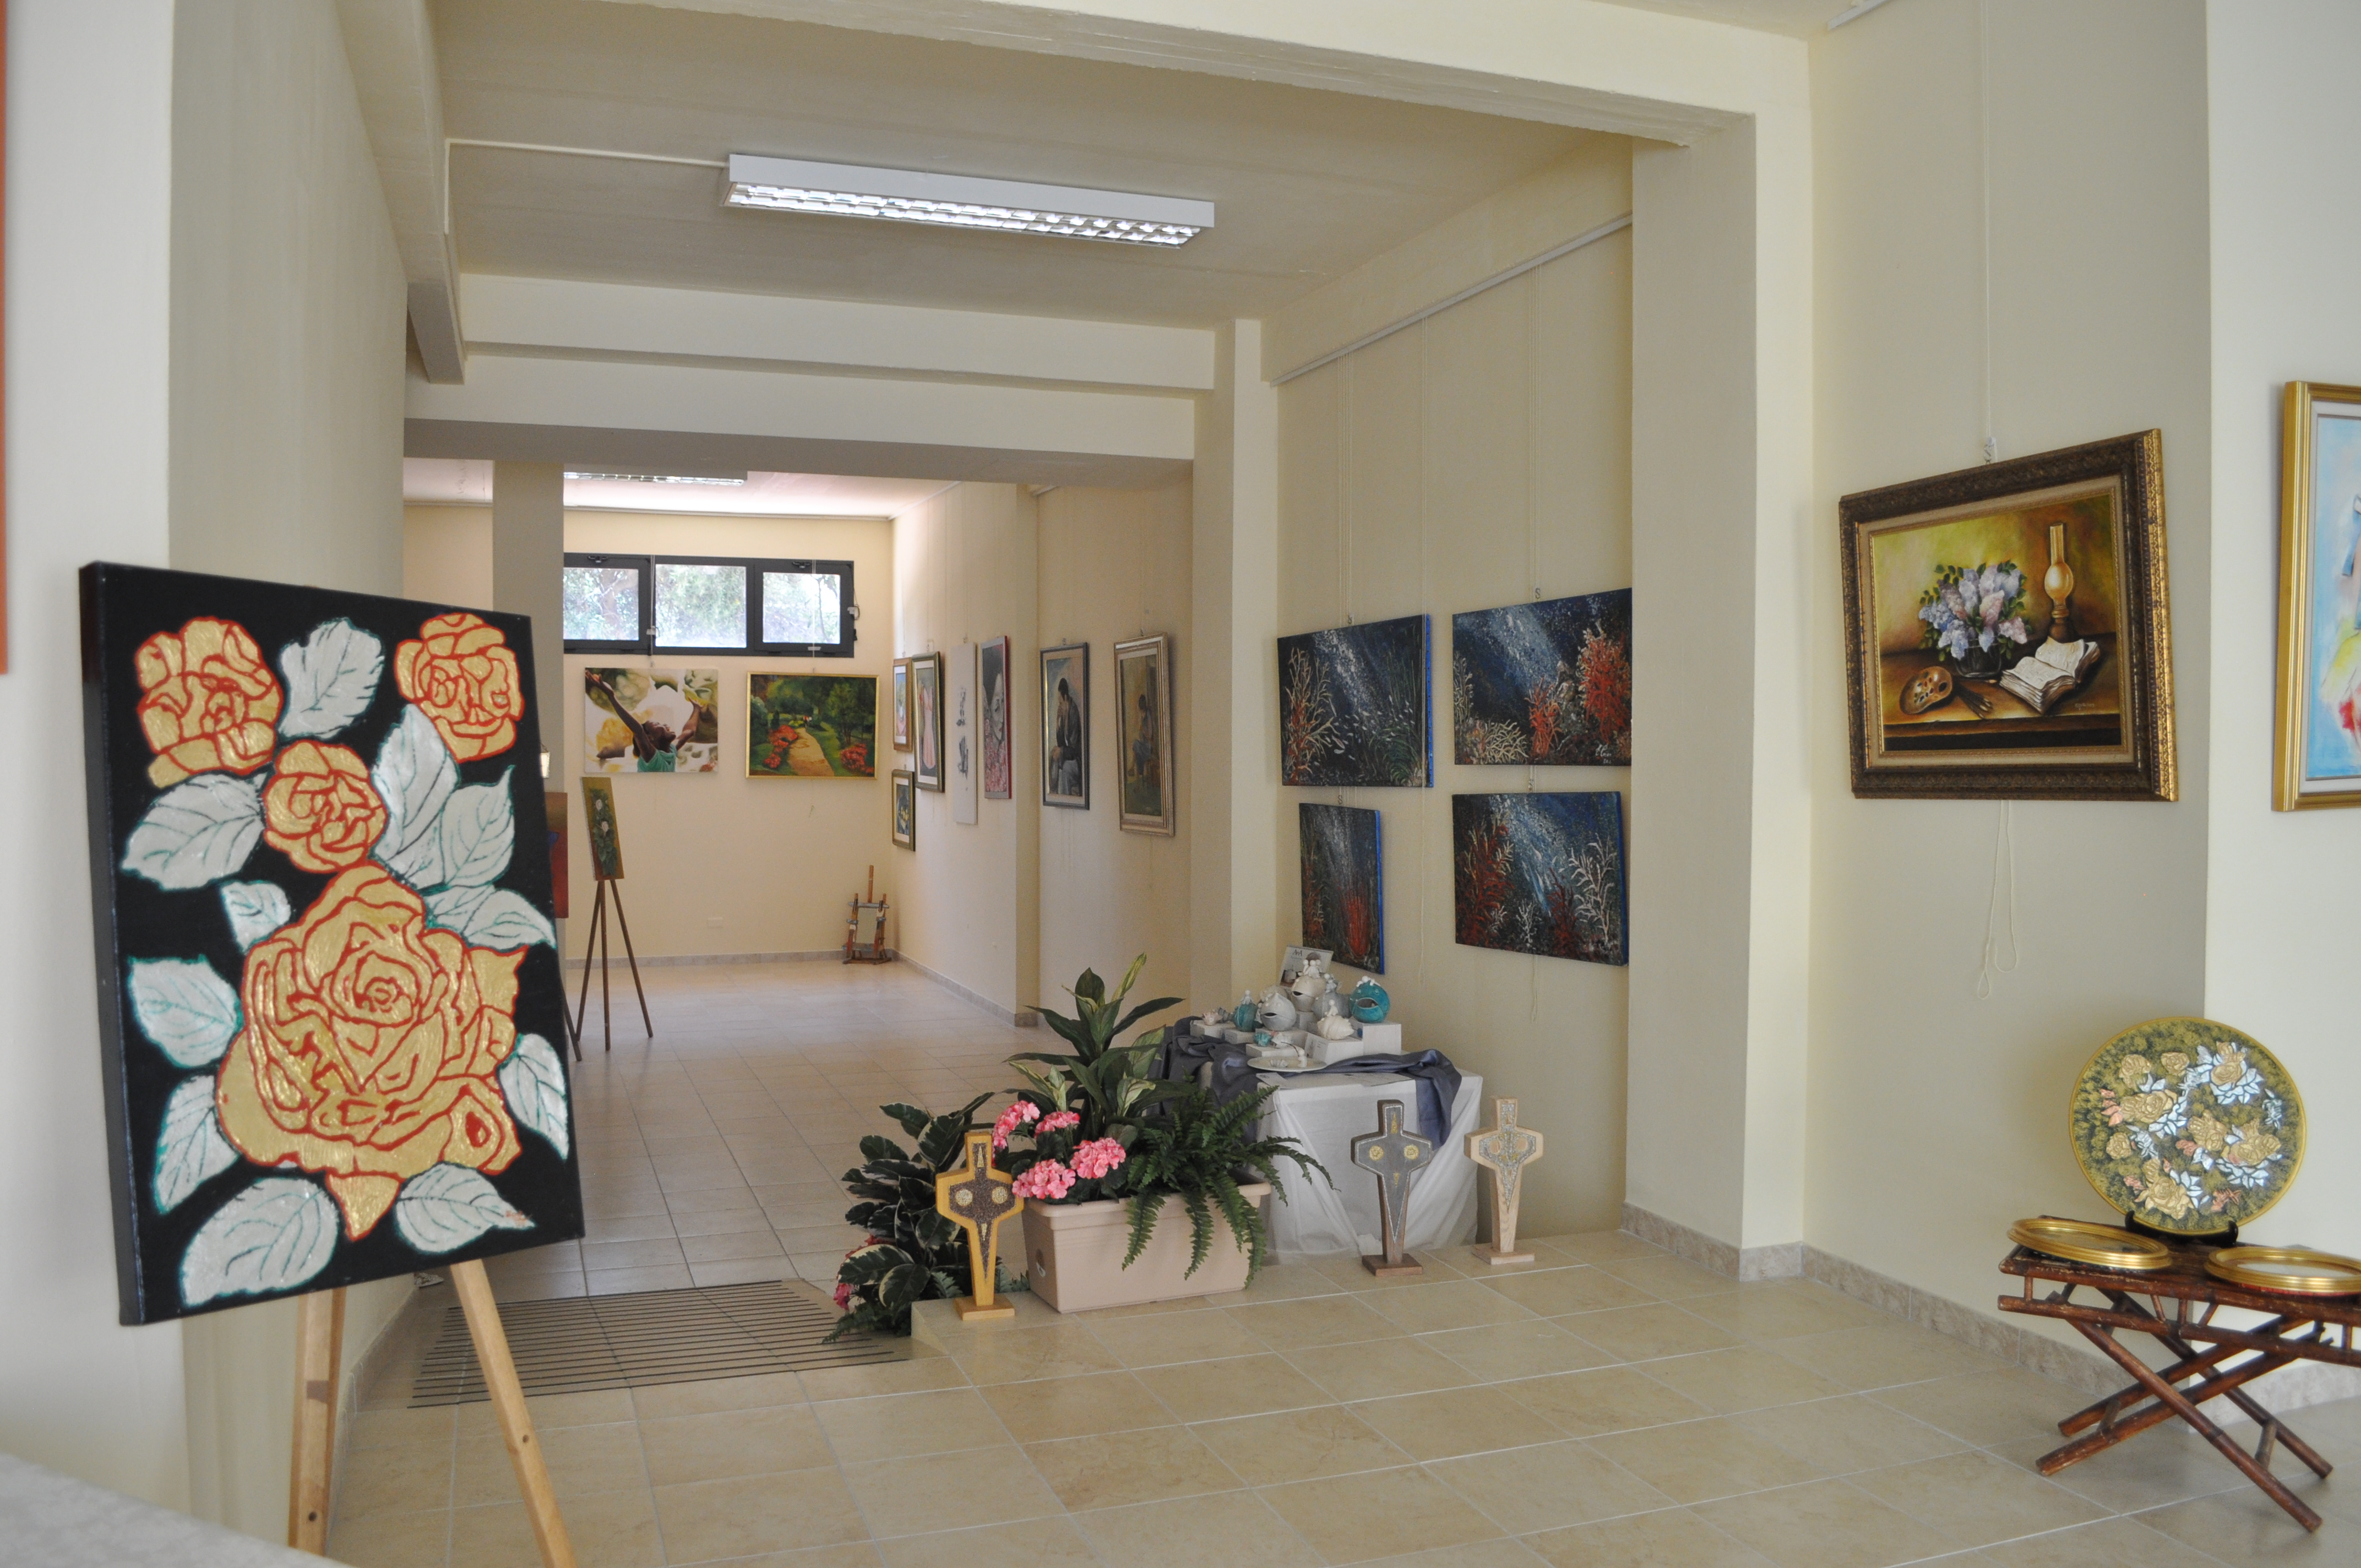 Olbia, l'Arte in centro: domani inaugurazione in via Cavour